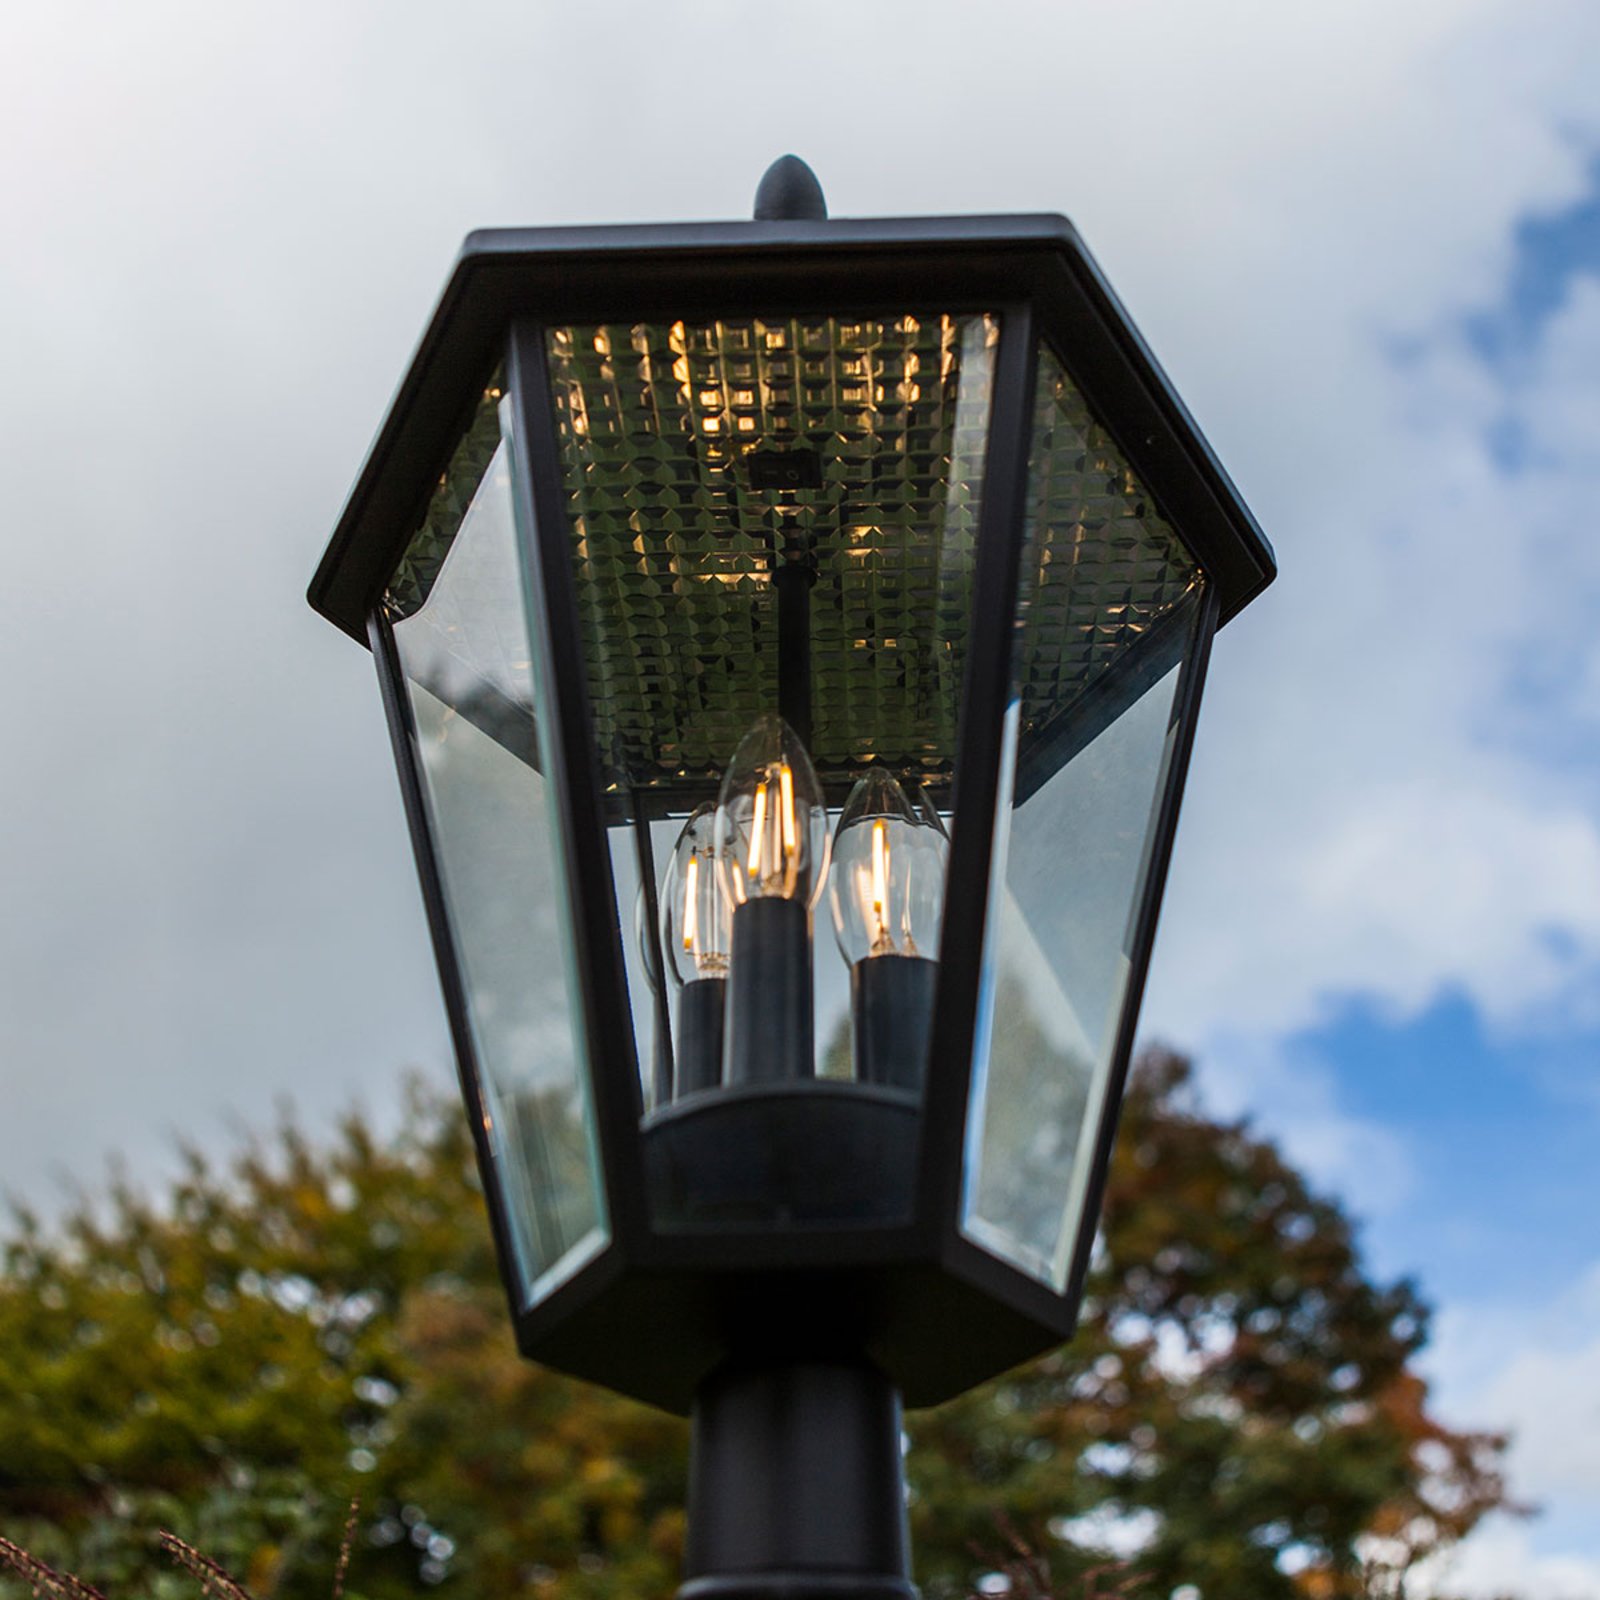 Candélabre solaire London à ampoules LED retrofit